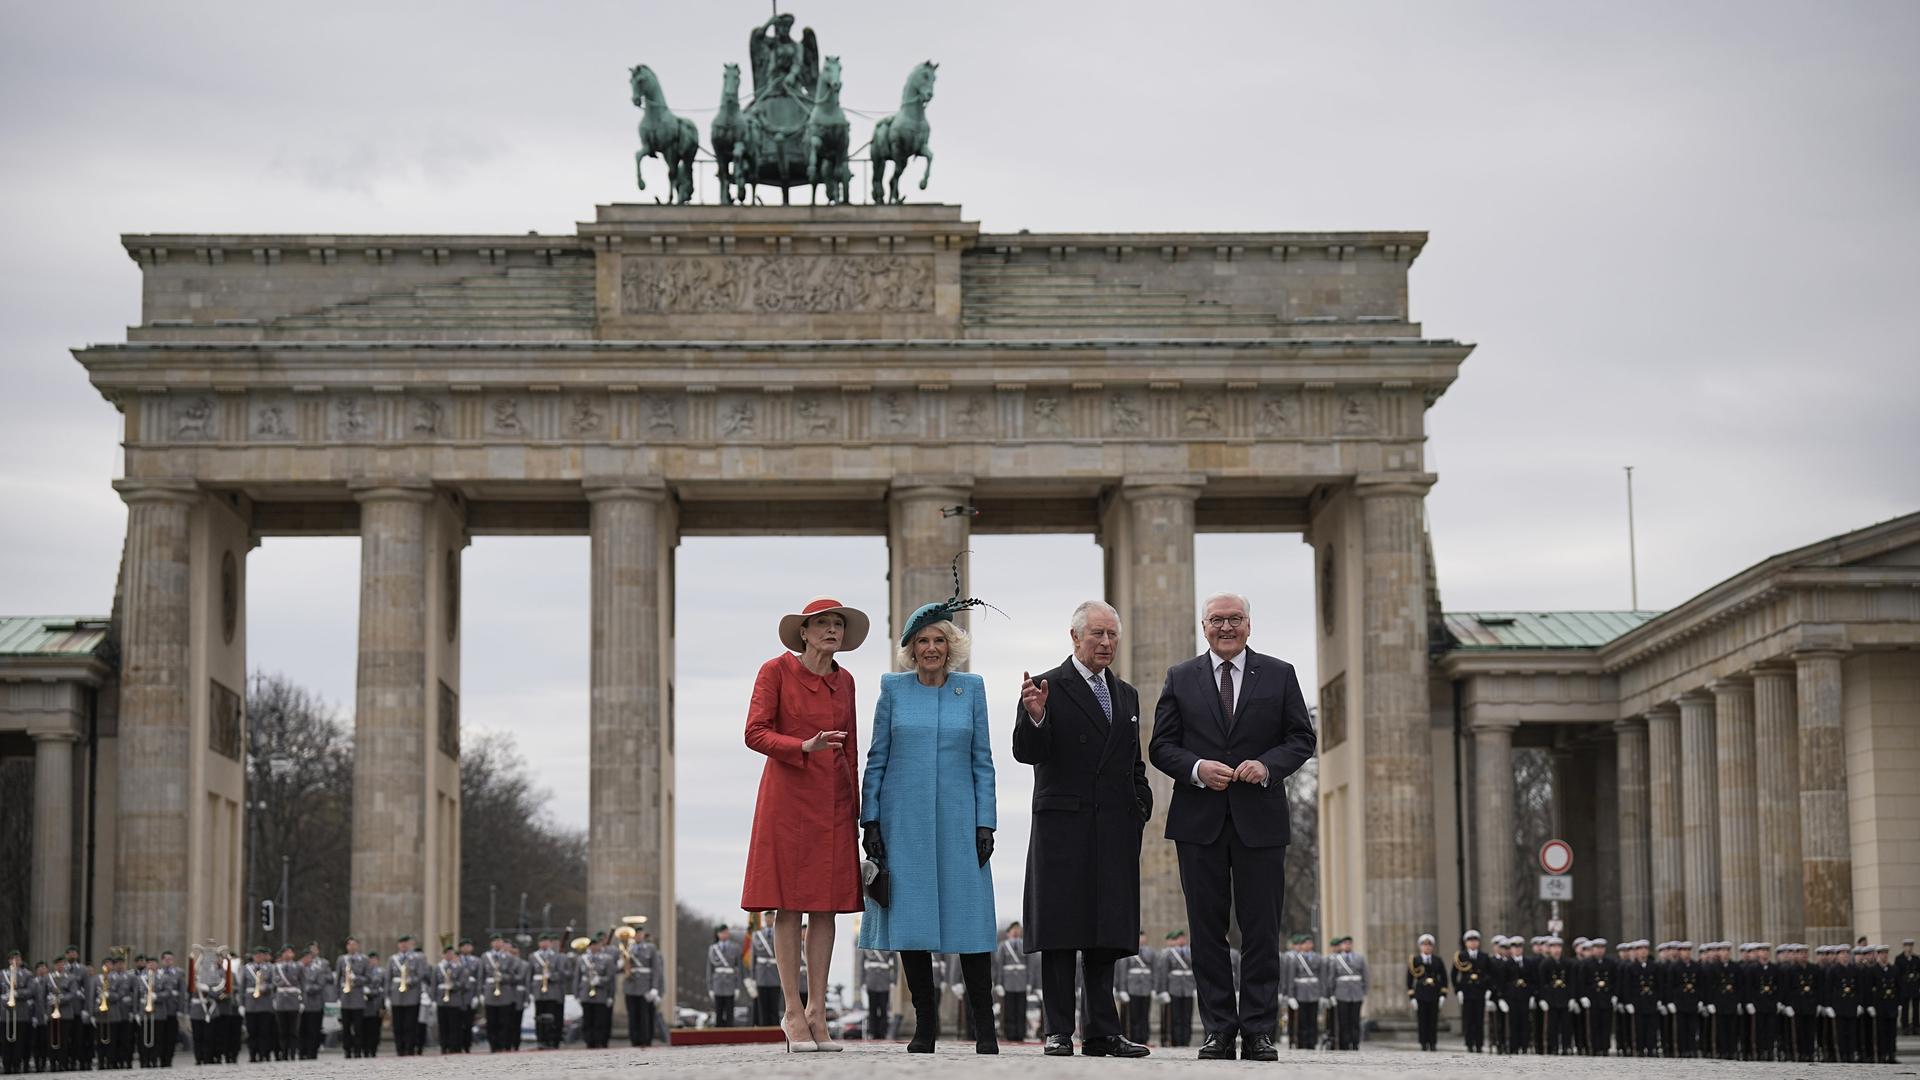 König Charles und seine Frau Camilla werden am Brandenburger Tor von Bundes-Präsident Frank-Walter Steinmeier und seiner Frau Elke Büdenbender mit militärischen Ehren begrüßt. 